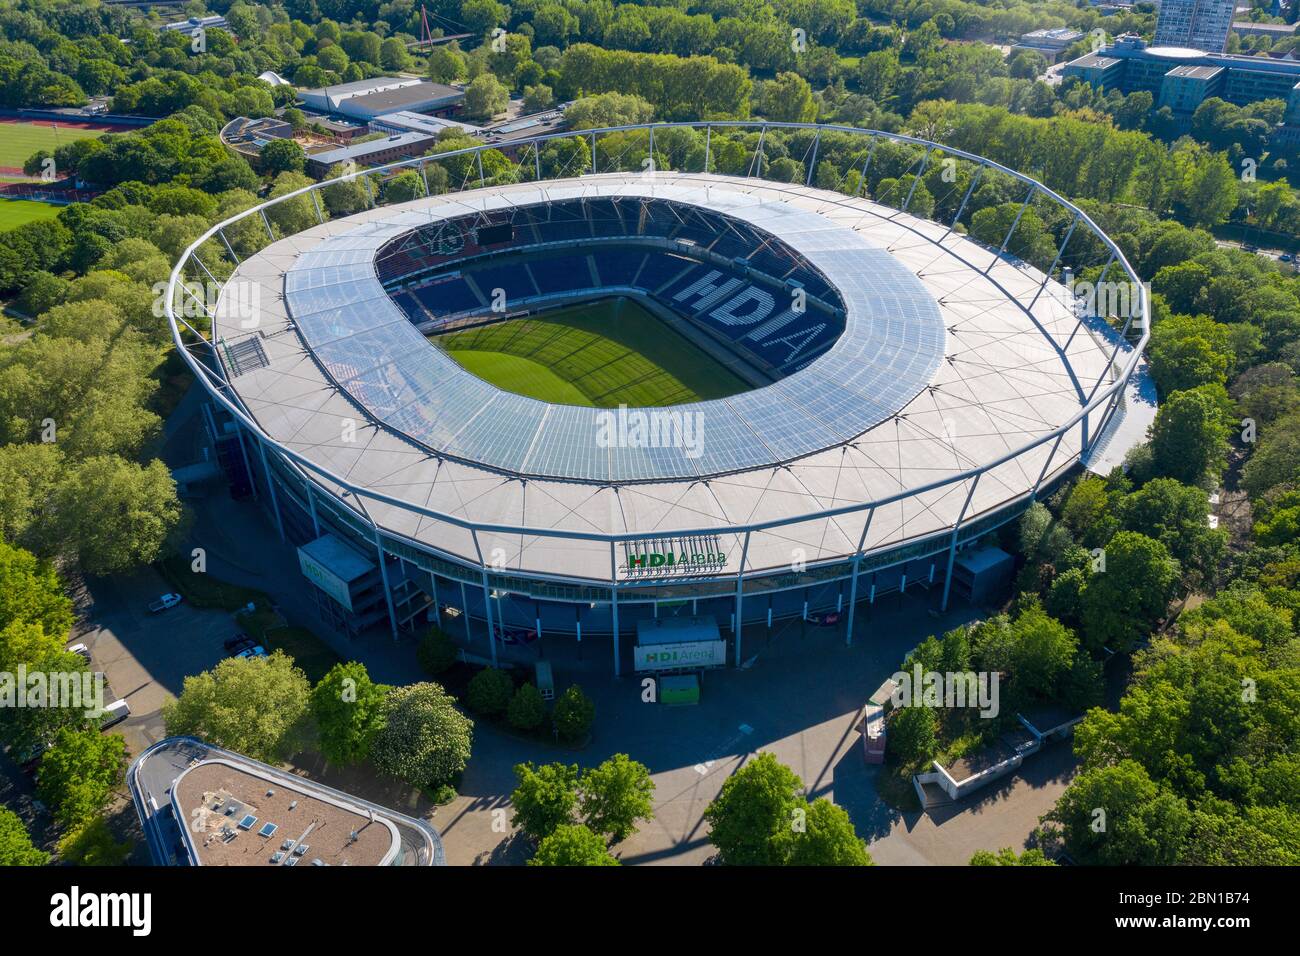 Stadio di Calcio Hannover, HDI Arena, utilizzata dal club Hannover 96,  Hannover, Germania Foto stock - Alamy